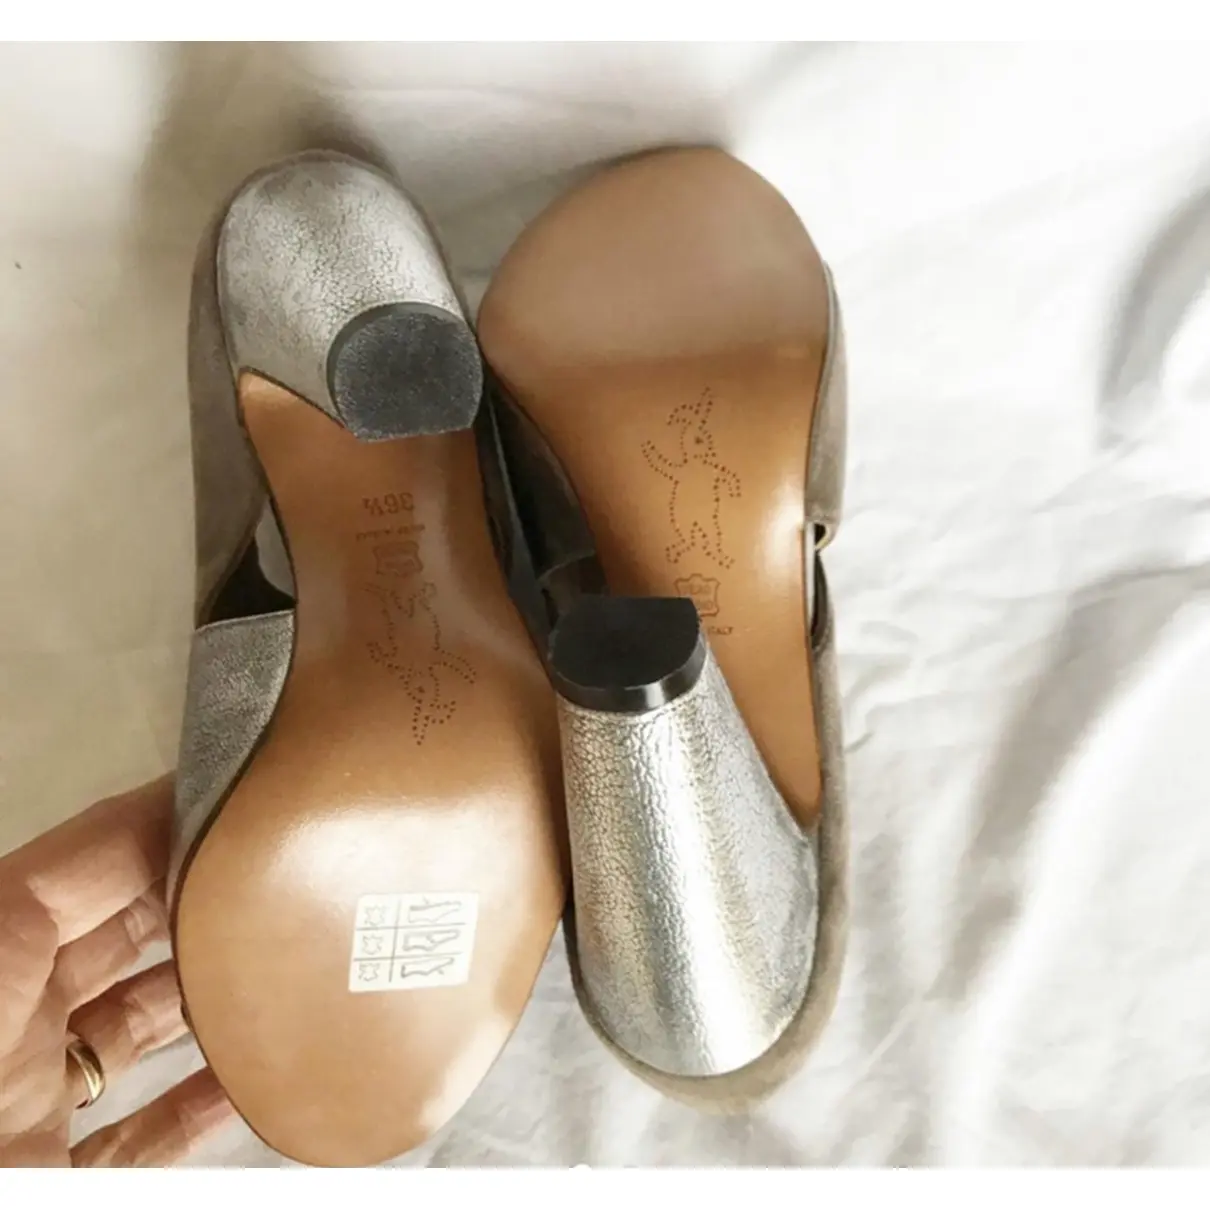 Buy Marni Leather heels online